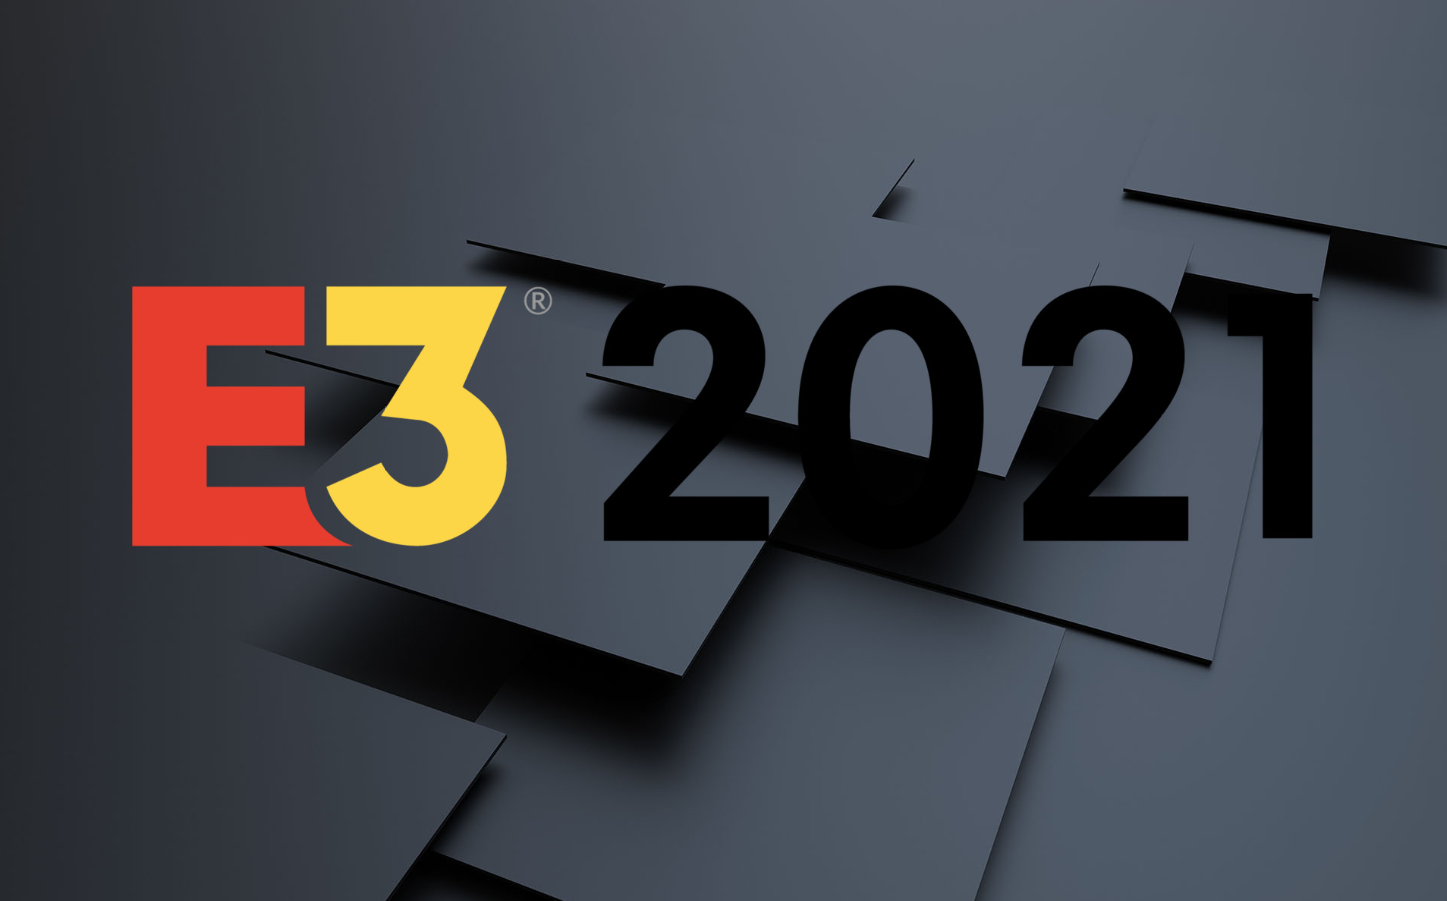 E3 2021 Logo